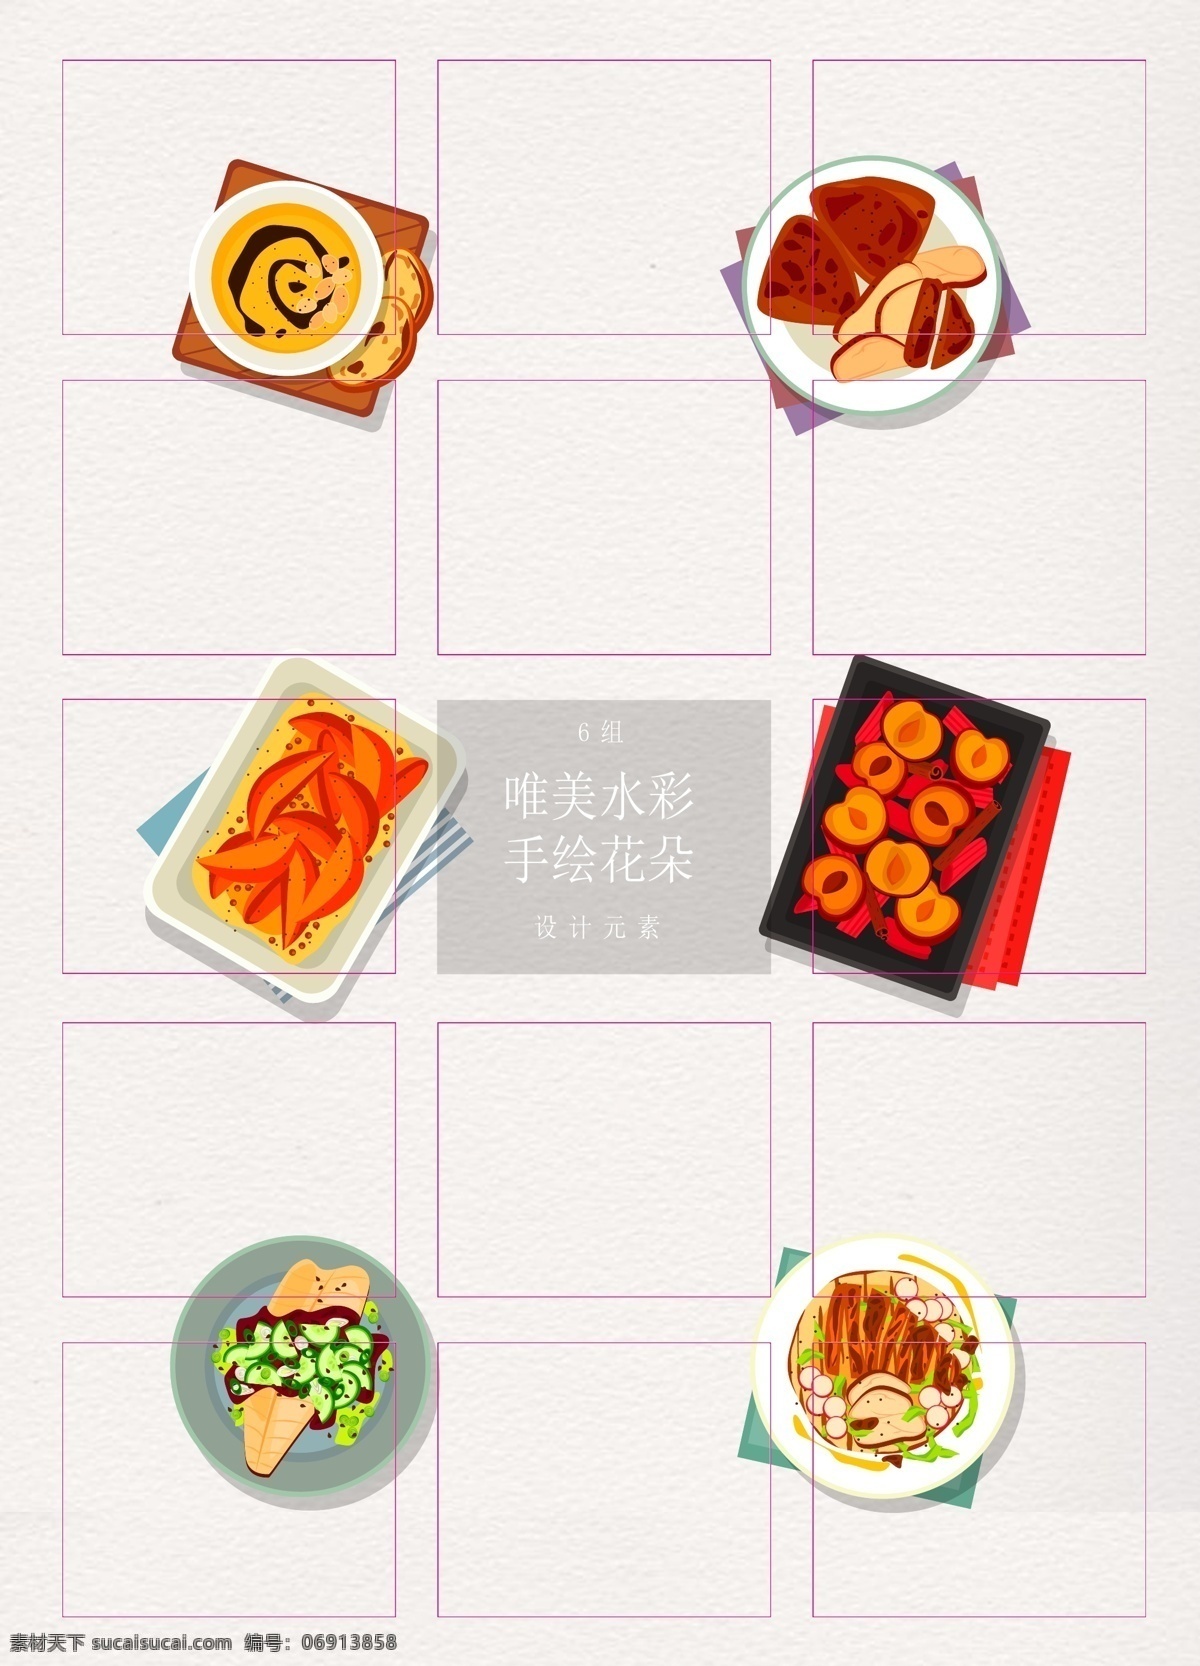 彩色 手绘 美食 卡通 菜品 矢量图 食物素材 菜肴 ai设计